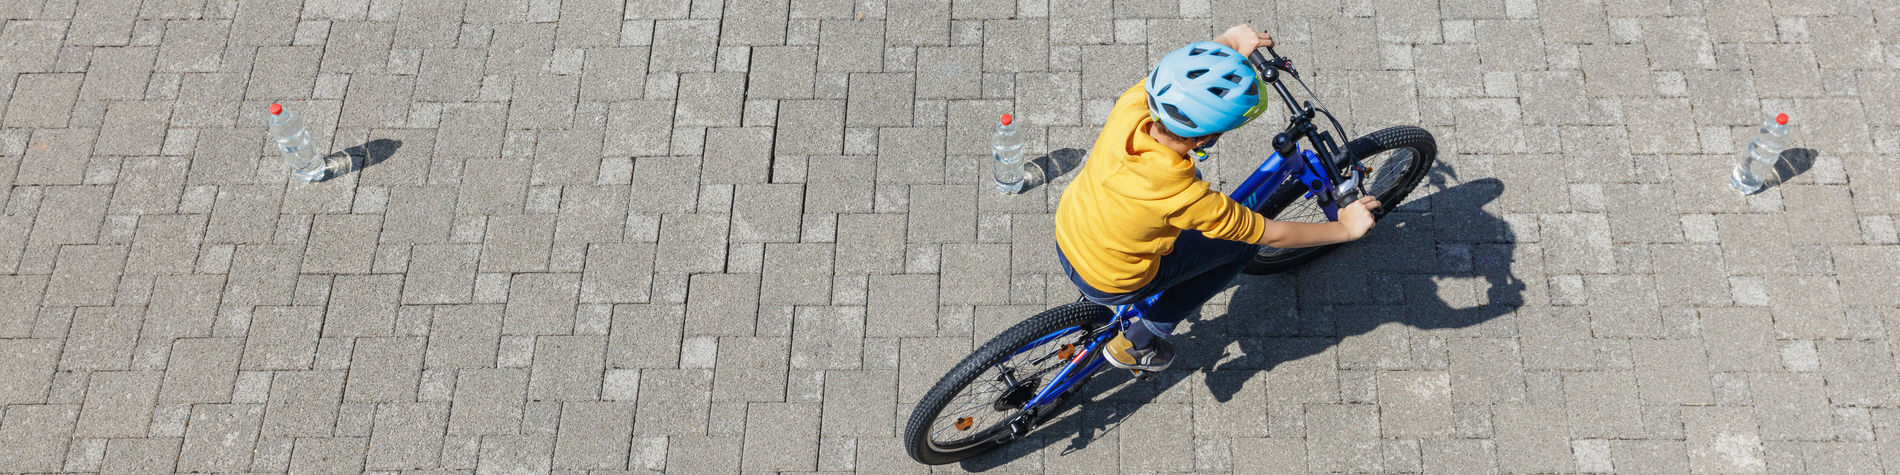 Sécurité des enfants à vélo : accessoires, législation et règles à suivre